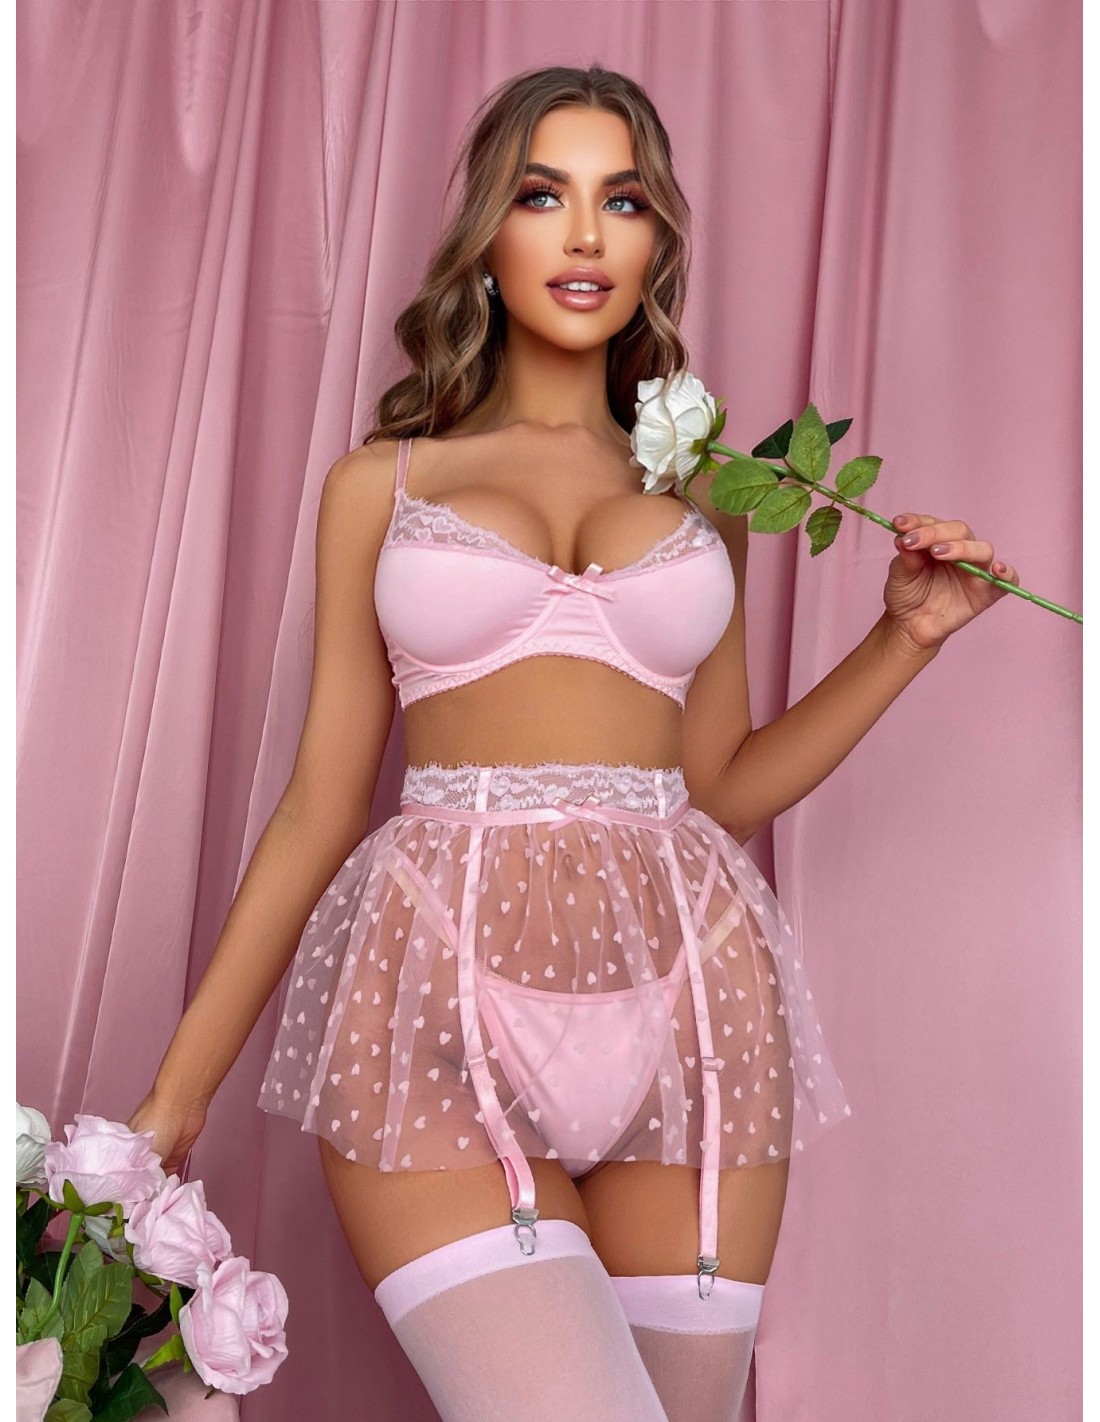 https://d3en8d2cl9etnr.cloudfront.net/1231651-thickbox_default/cute-bra-underwear-women--lace-sheer-under-wear-sissy-lingerie-heart-m.jpg